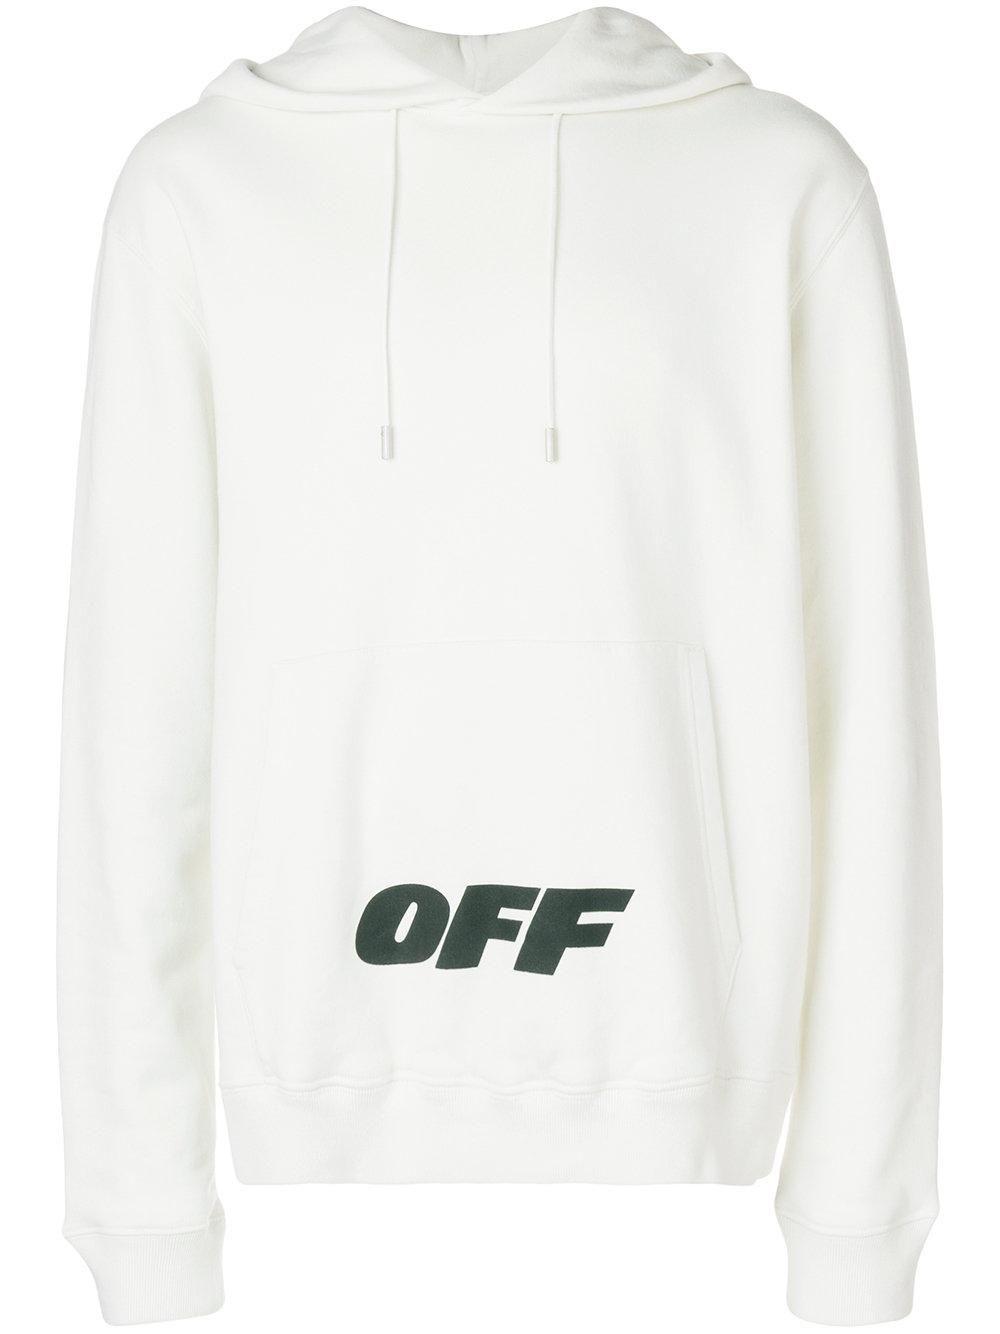 Off White Virgil Abloh Logo - Off-White C/O Virgil Abloh Logo Printed Hooded Sweatshirt in White ...